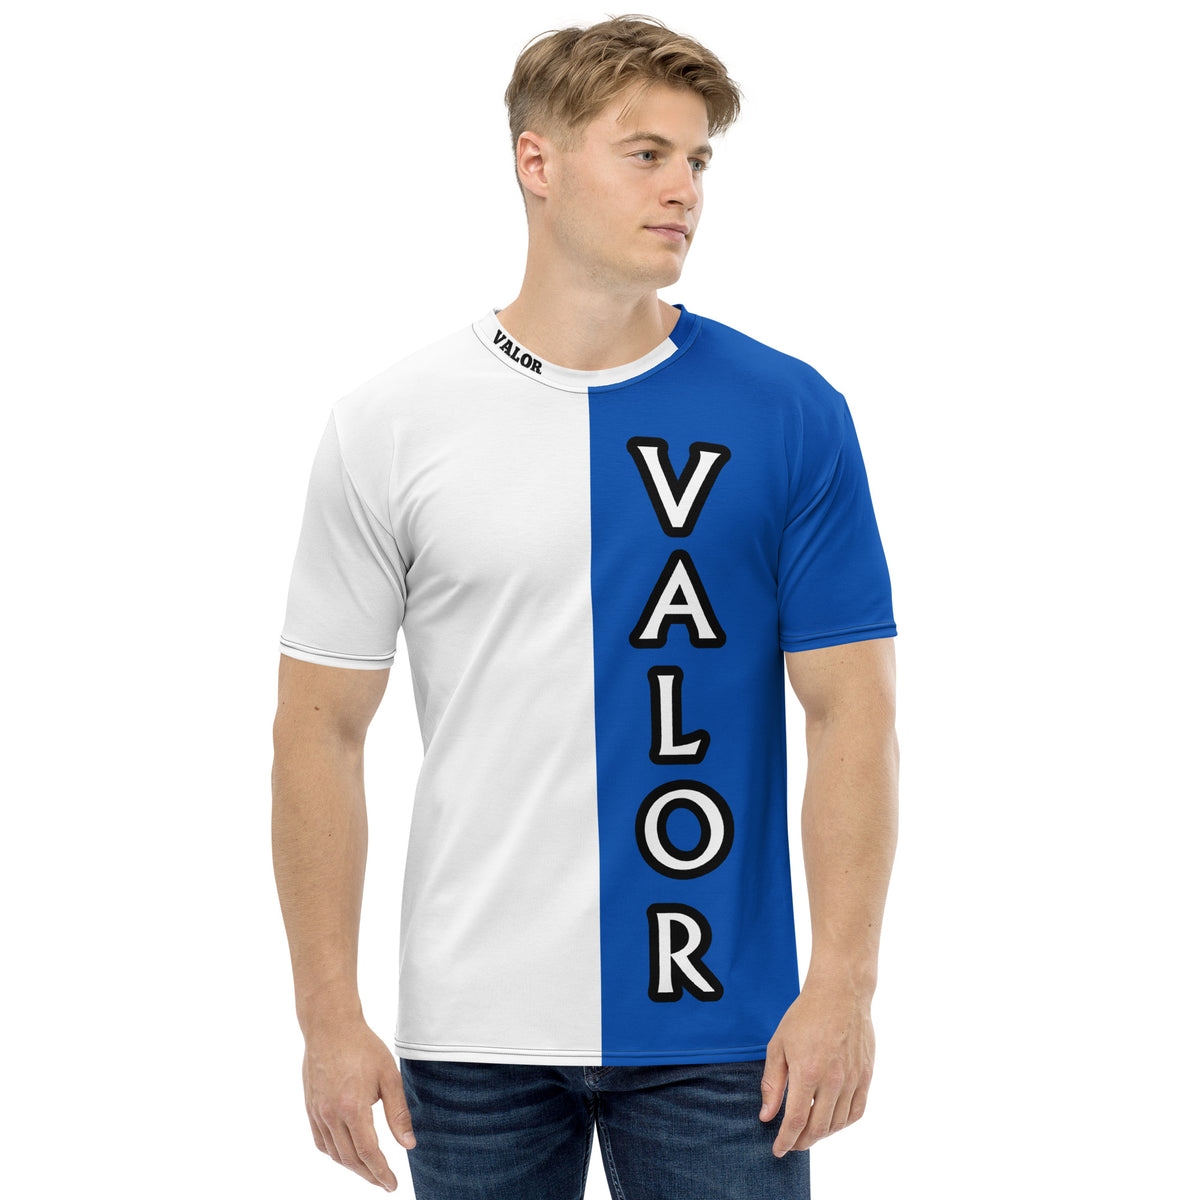 The VALOR Shirt, Blue, Men's Fit